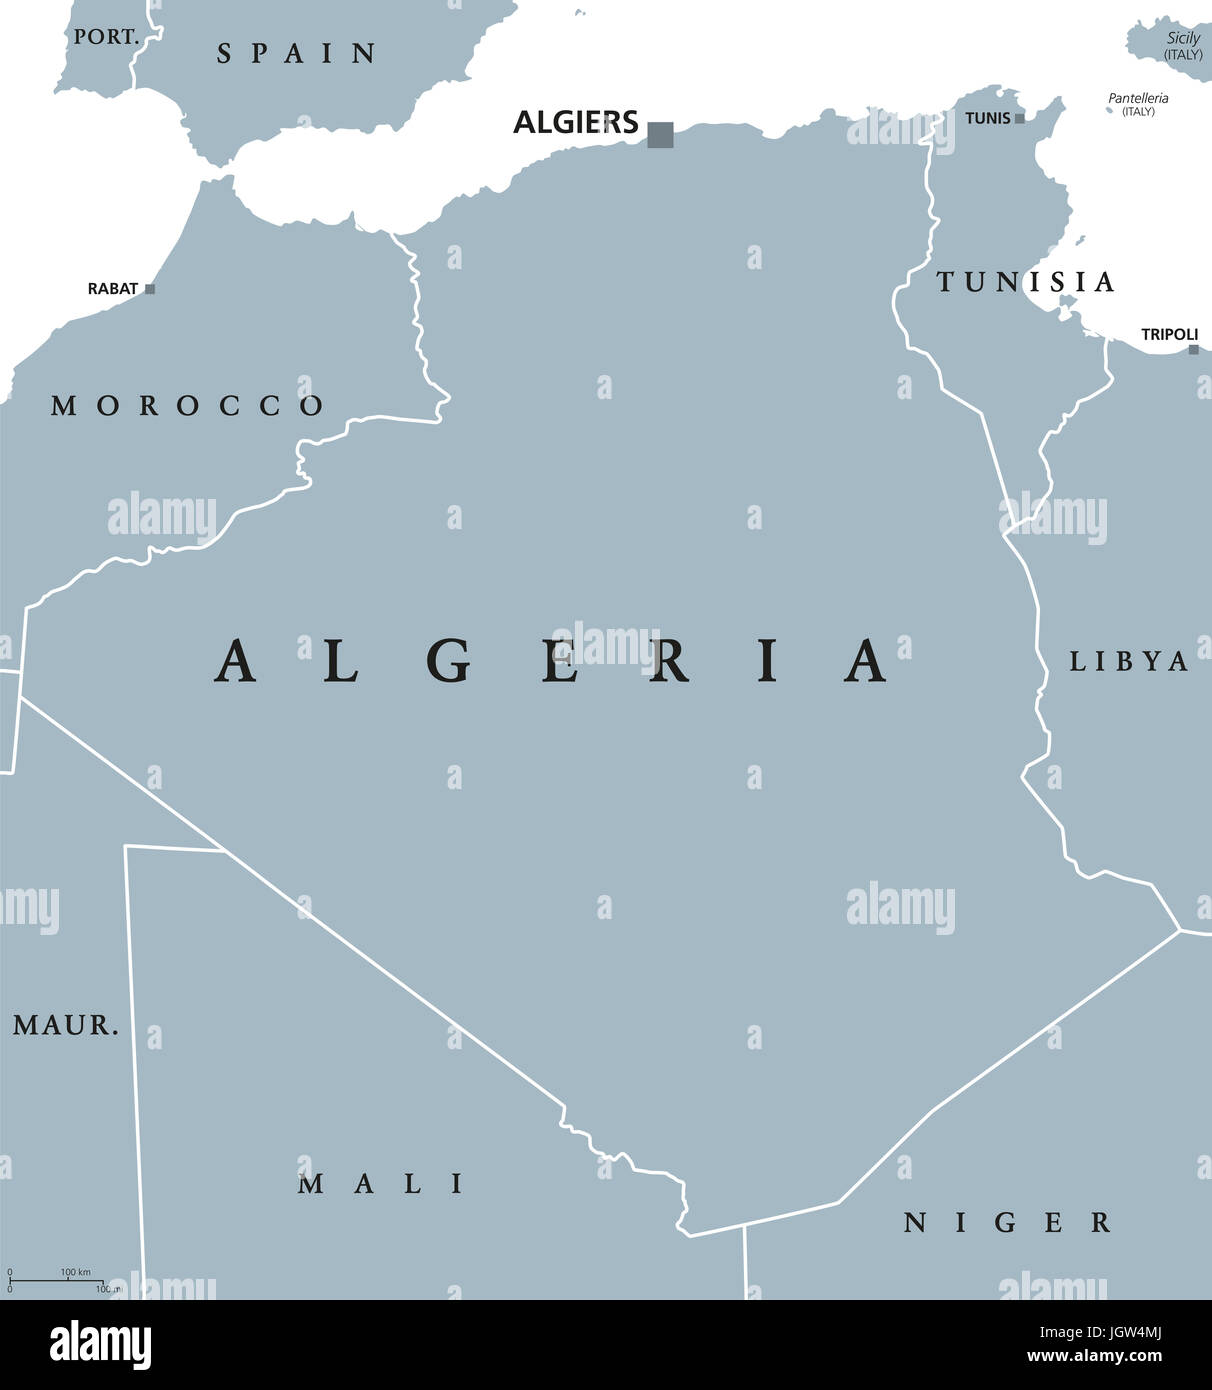 Algeria mappa politico con capitale Algeri. I popoli della Repubblica democratica d'Algeria. Paese arabo nella regione del Maghreb del Nord Africa. Illustrazione. Foto Stock